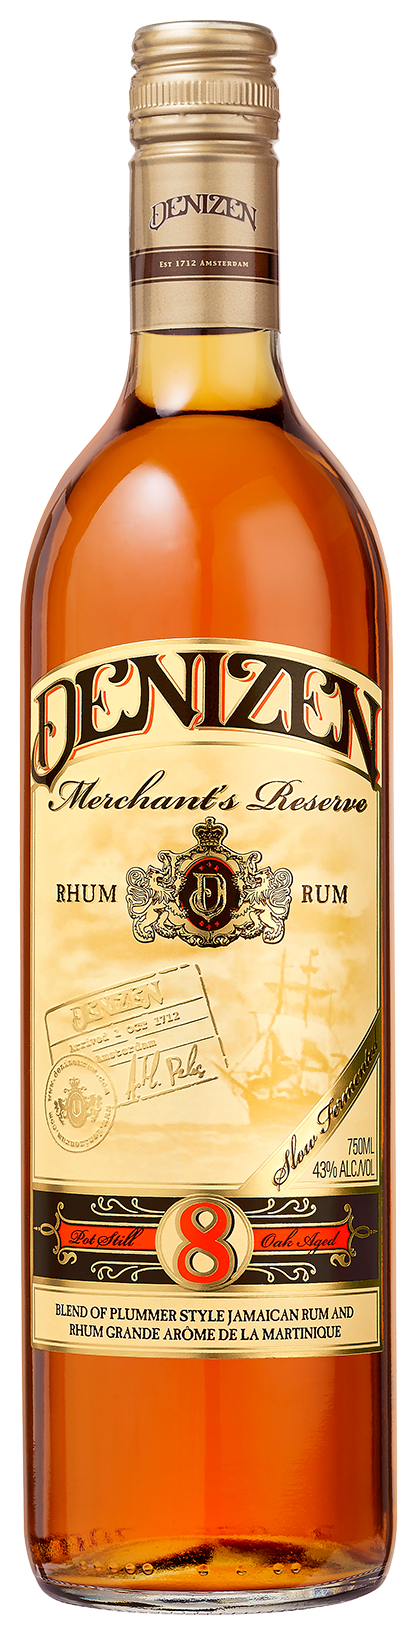 DENIZEN MERCHANTS RESERVE Rum BeverageWarehouse